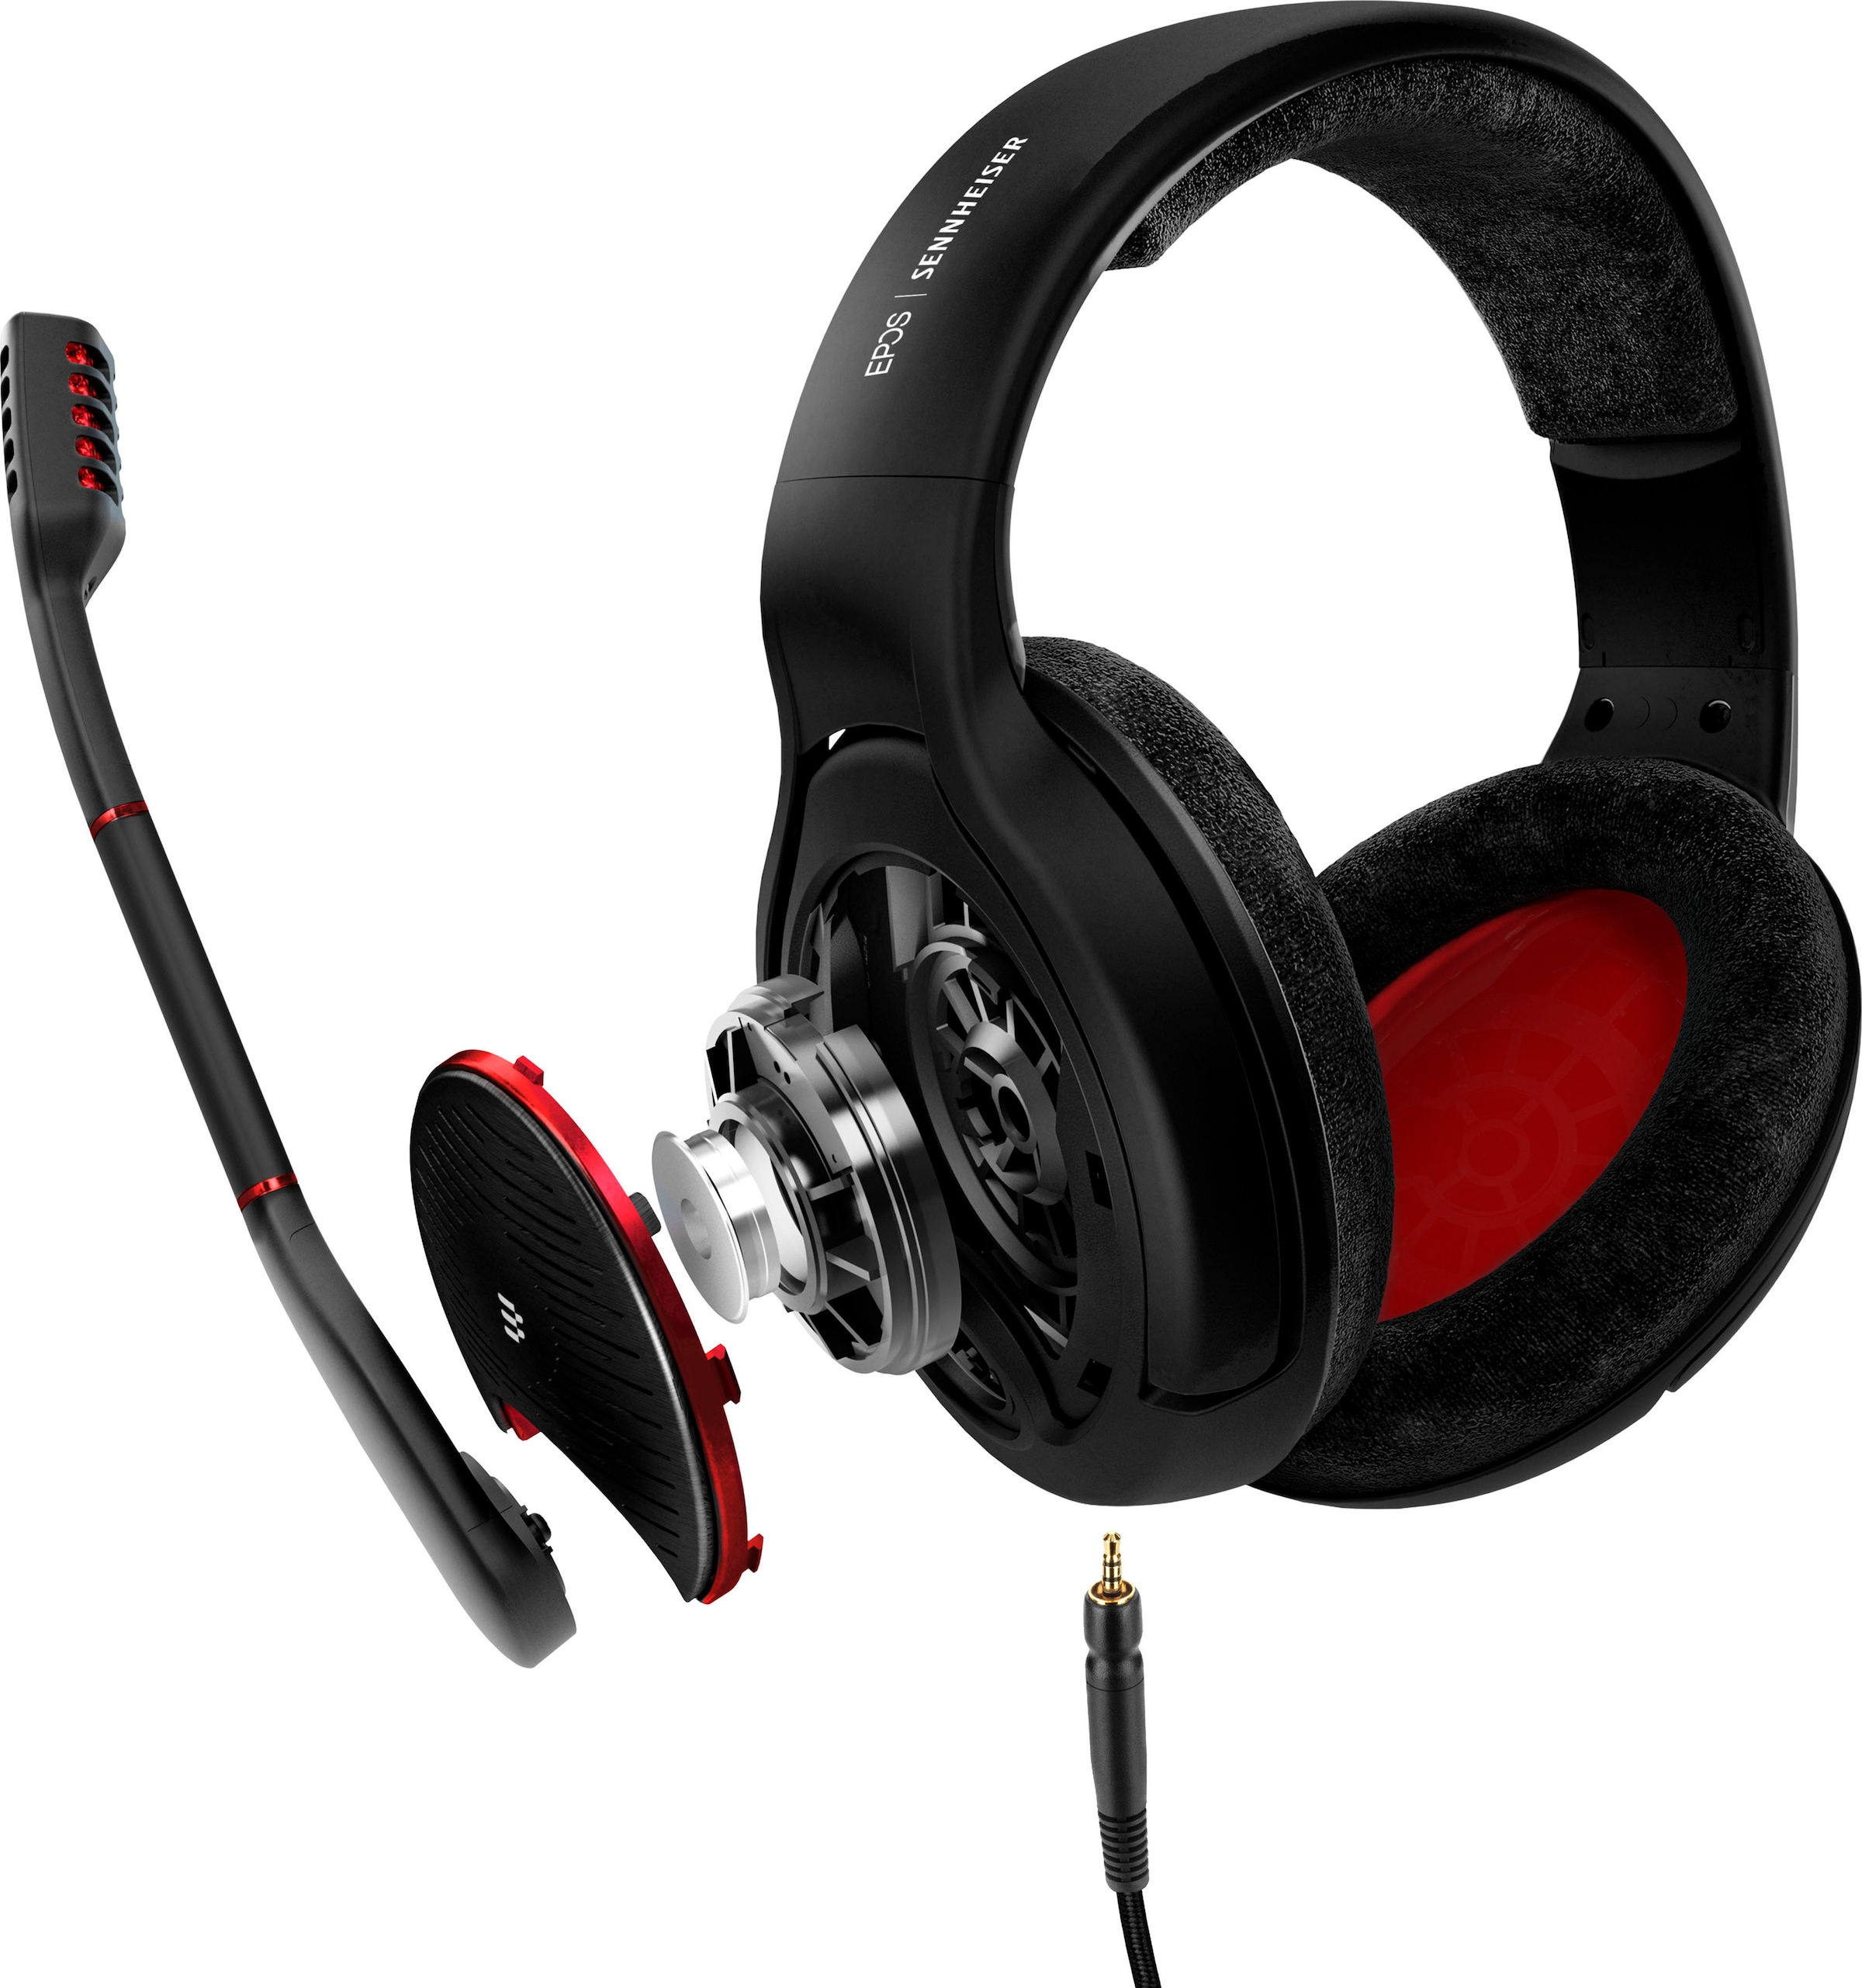 EPOS | Sennheiser Gaming-Headset »Game One«, mit offener Akustik